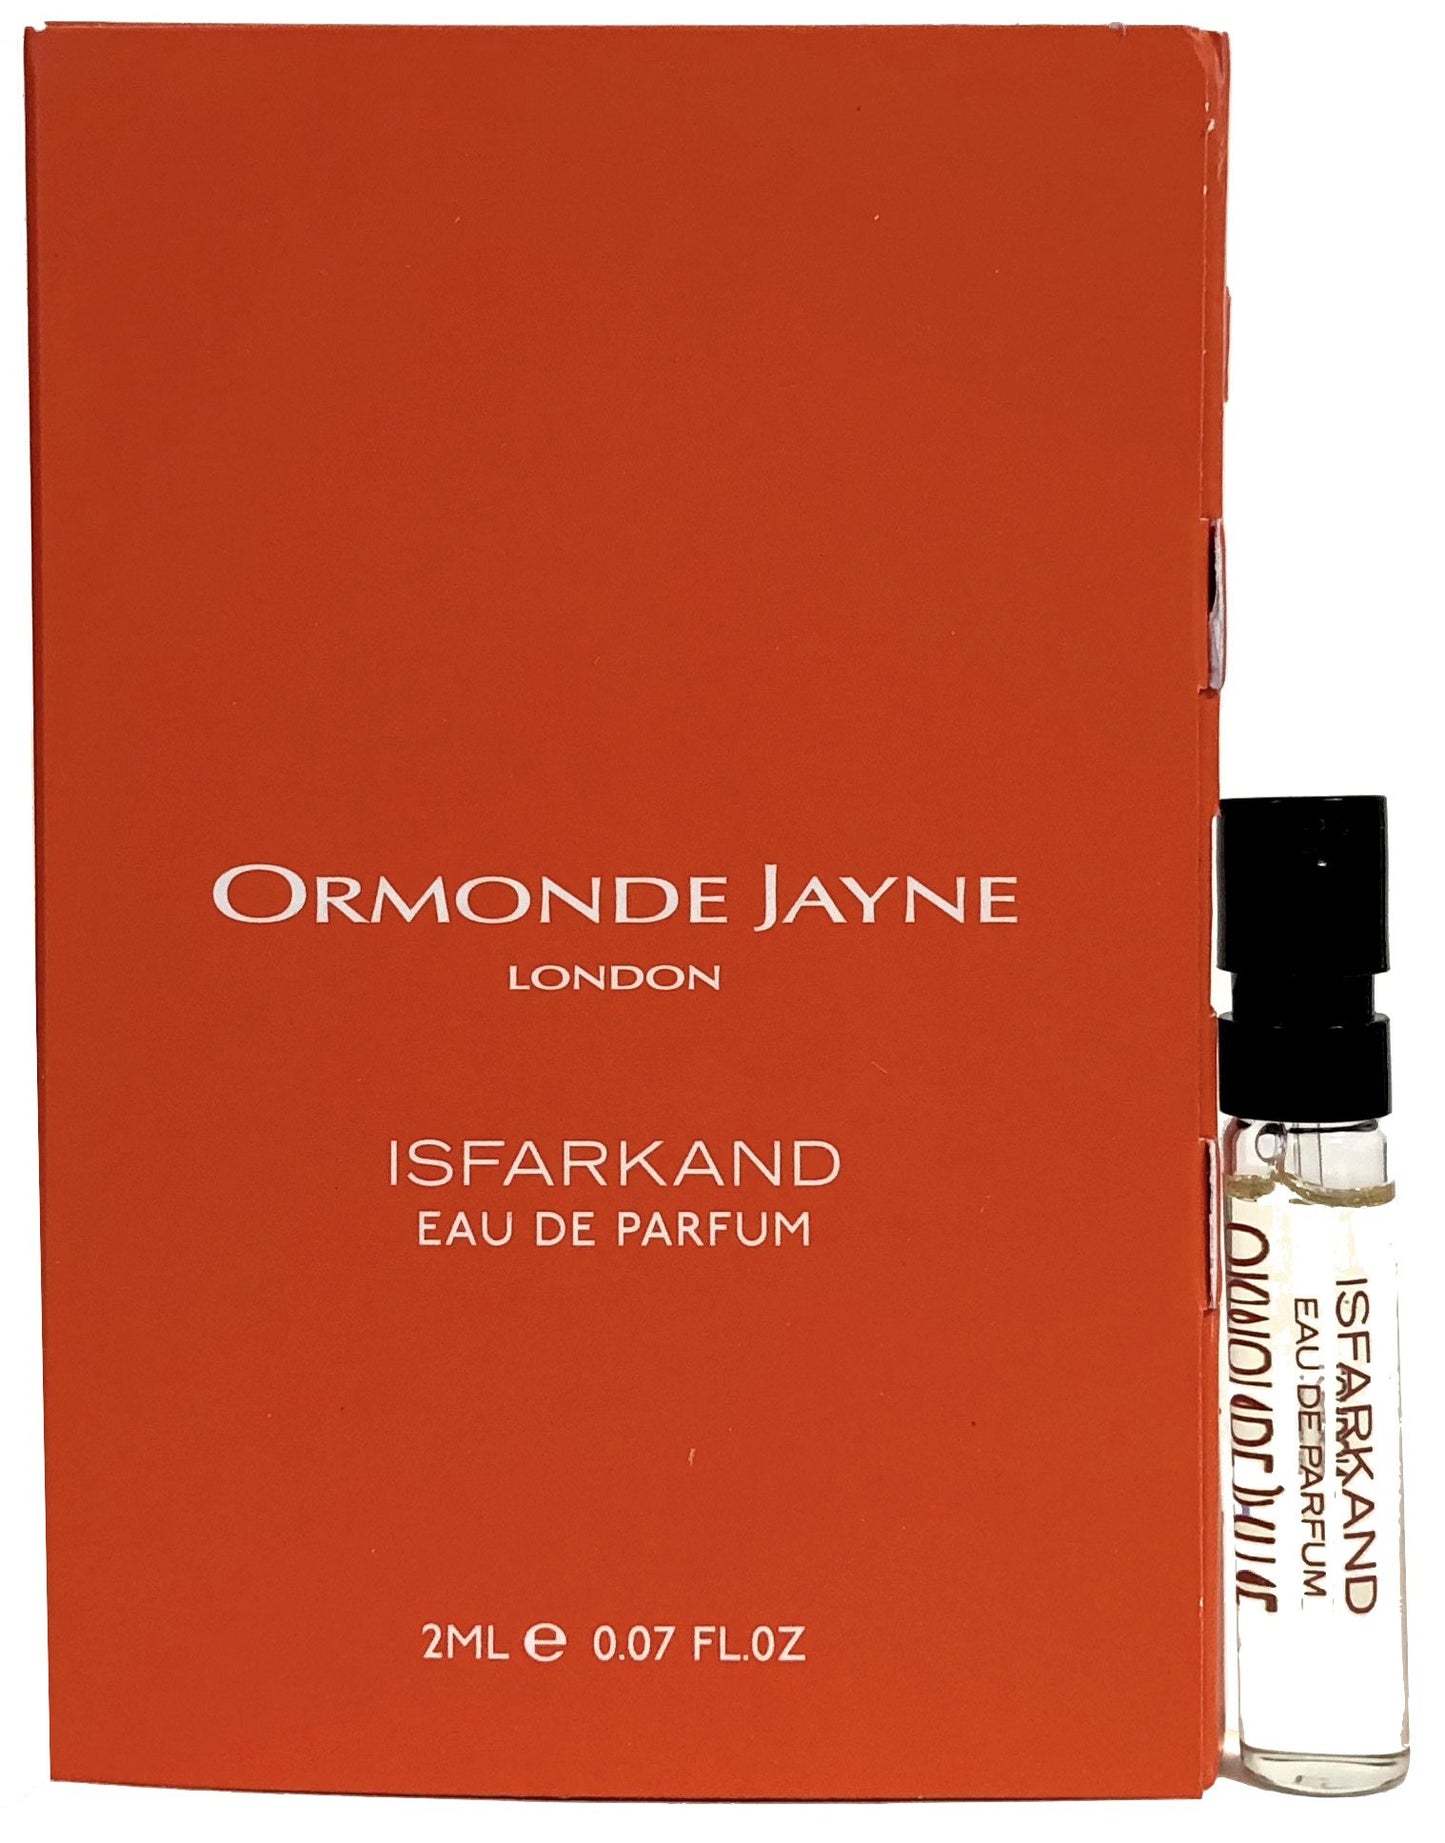 Επίσημα δείγματα αρωμάτων Ormonde Jayne Isfarkand 2ml